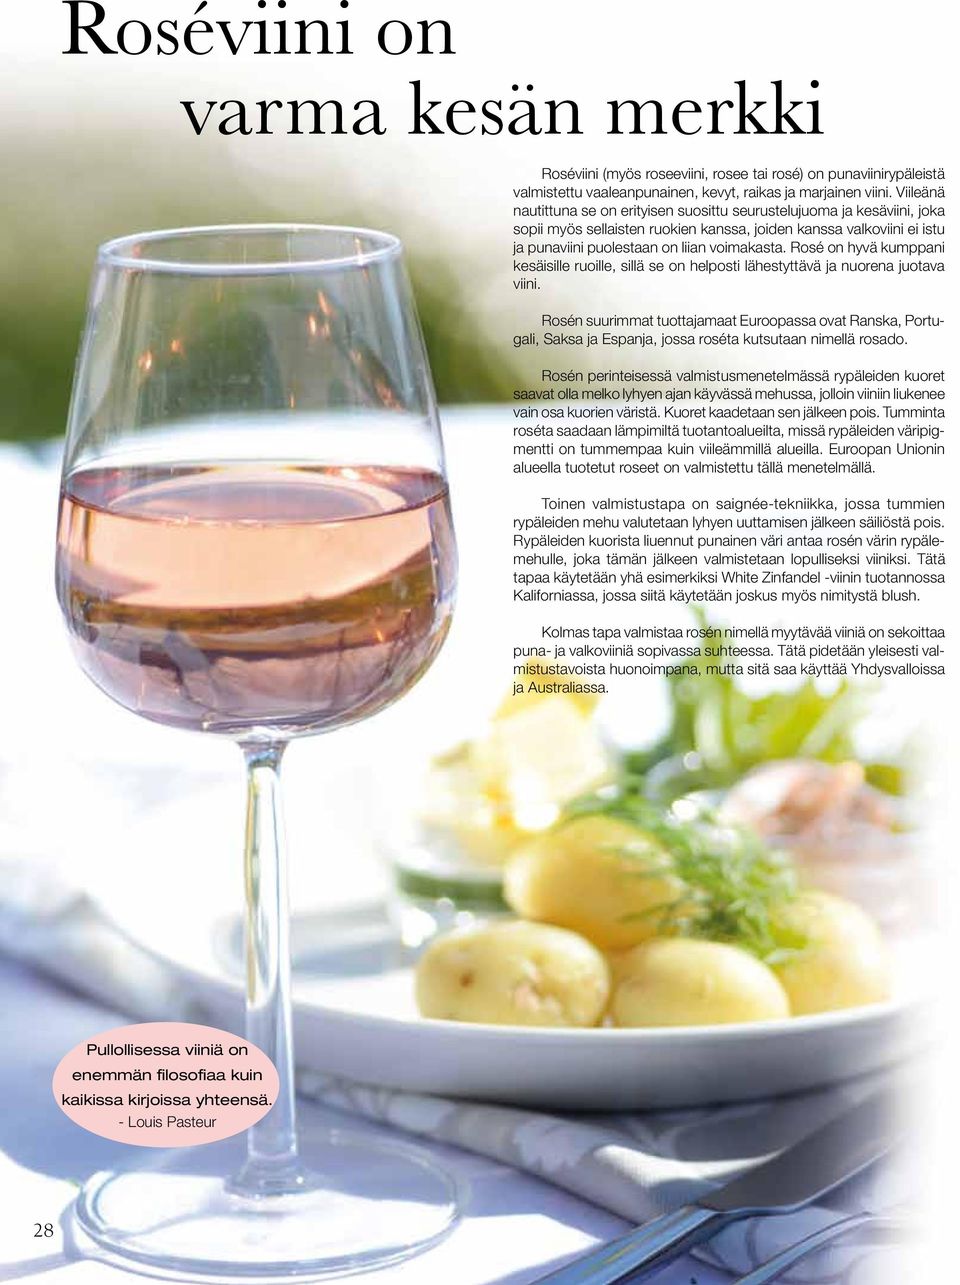 Rosé on hyvä kumppani kesäisille ruoille, sillä se on helposti lähestyttävä ja nuorena juotava viini.